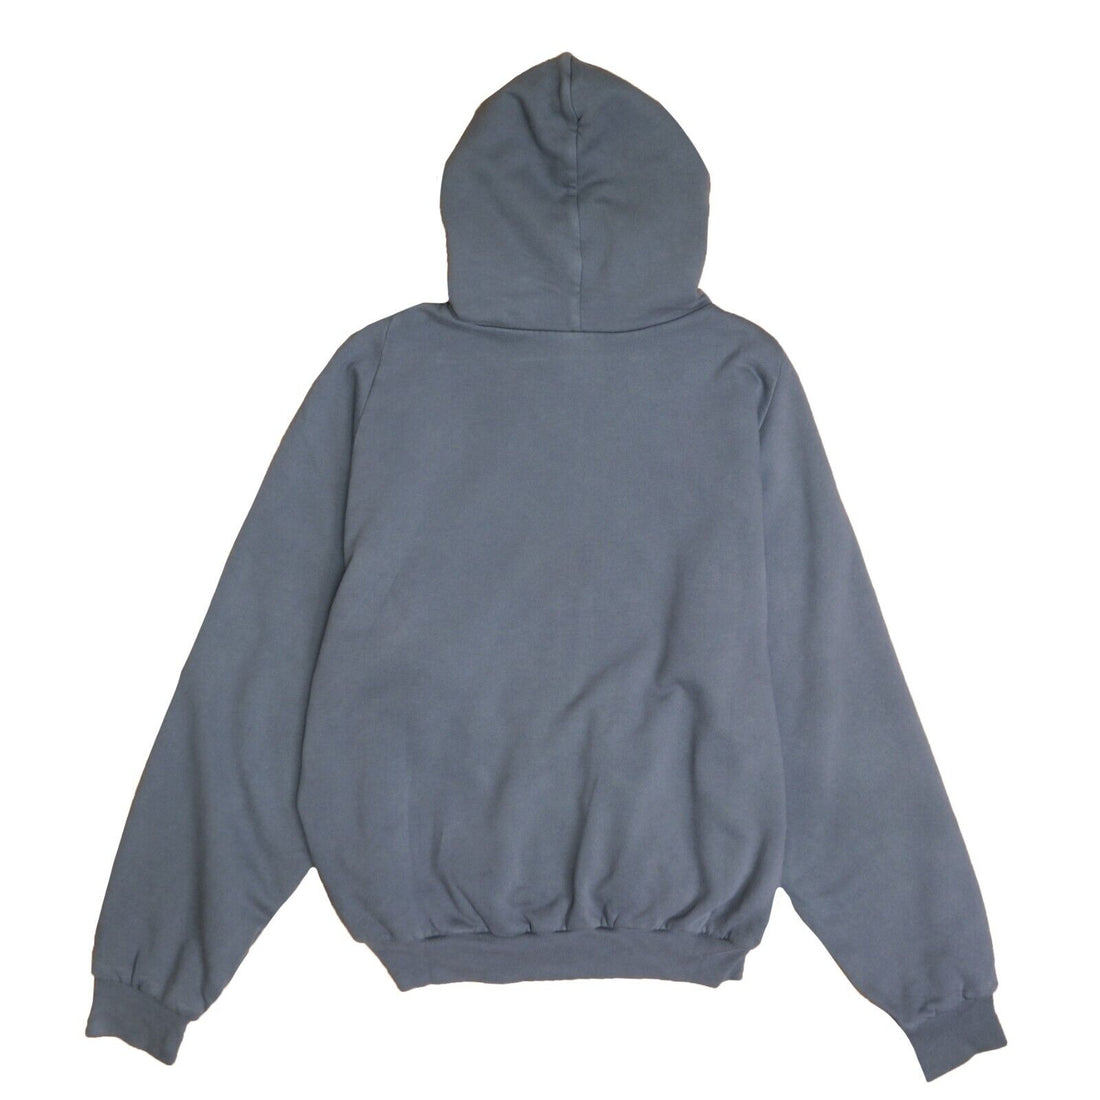 Yeezy Gap Unreleased Zip Sweatshirt Hoodie Size Medium Dark Gray